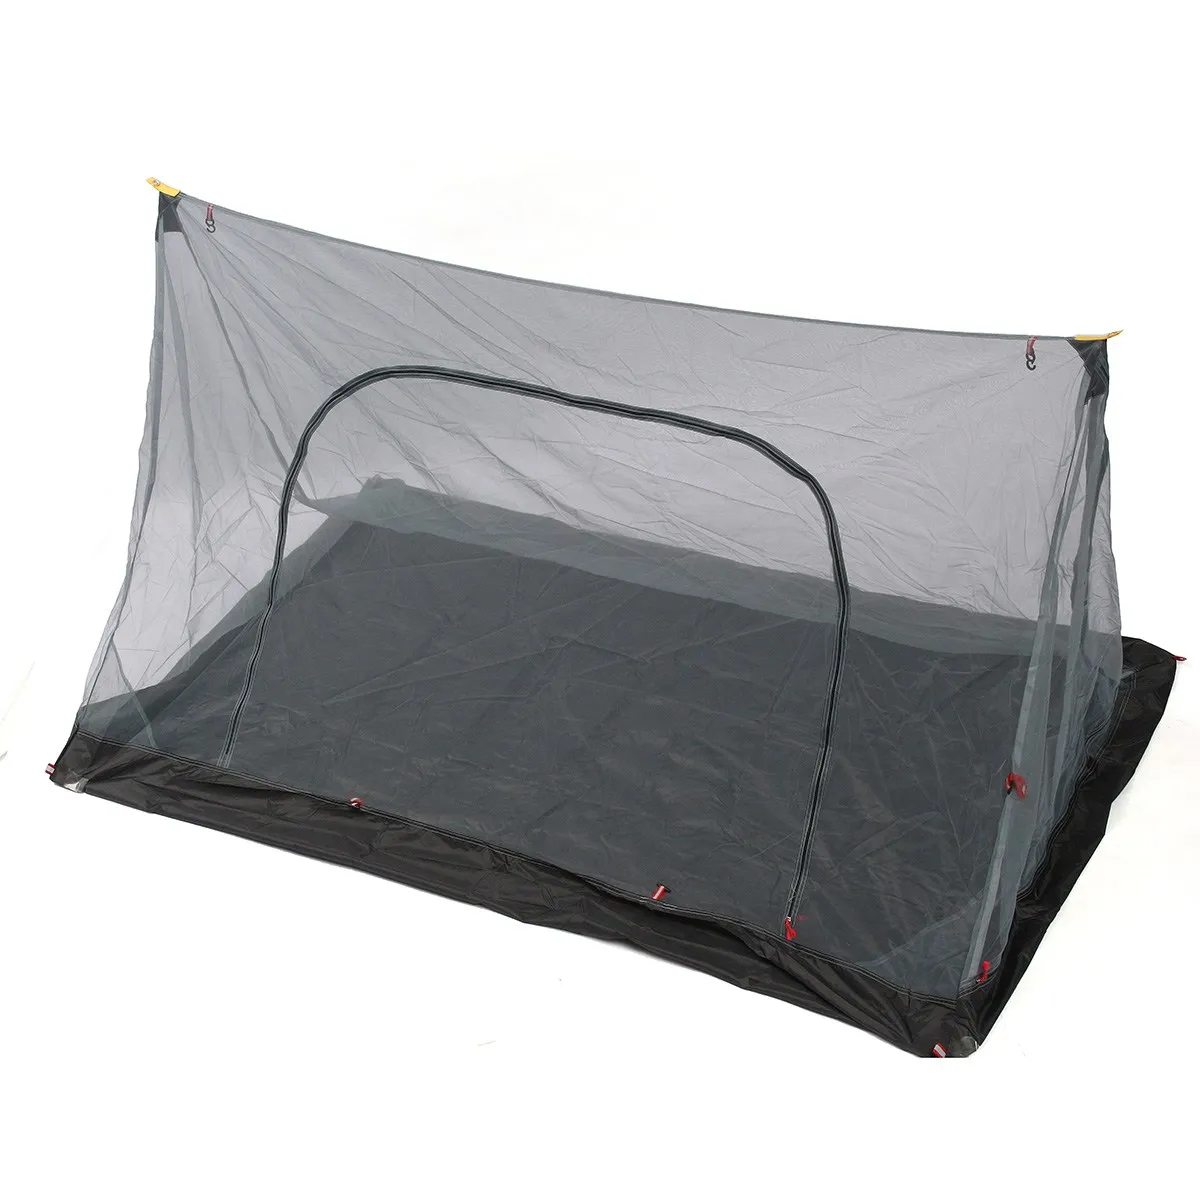 Großhandel - 2 Personen Anti-Mücken-Zelt, Sonnenschutz, Outdoor-Campingzelte, Picknick, Sonnenschutz, Überdachung, Sonnenschutz, Markisenzelt für Camping, Wandern